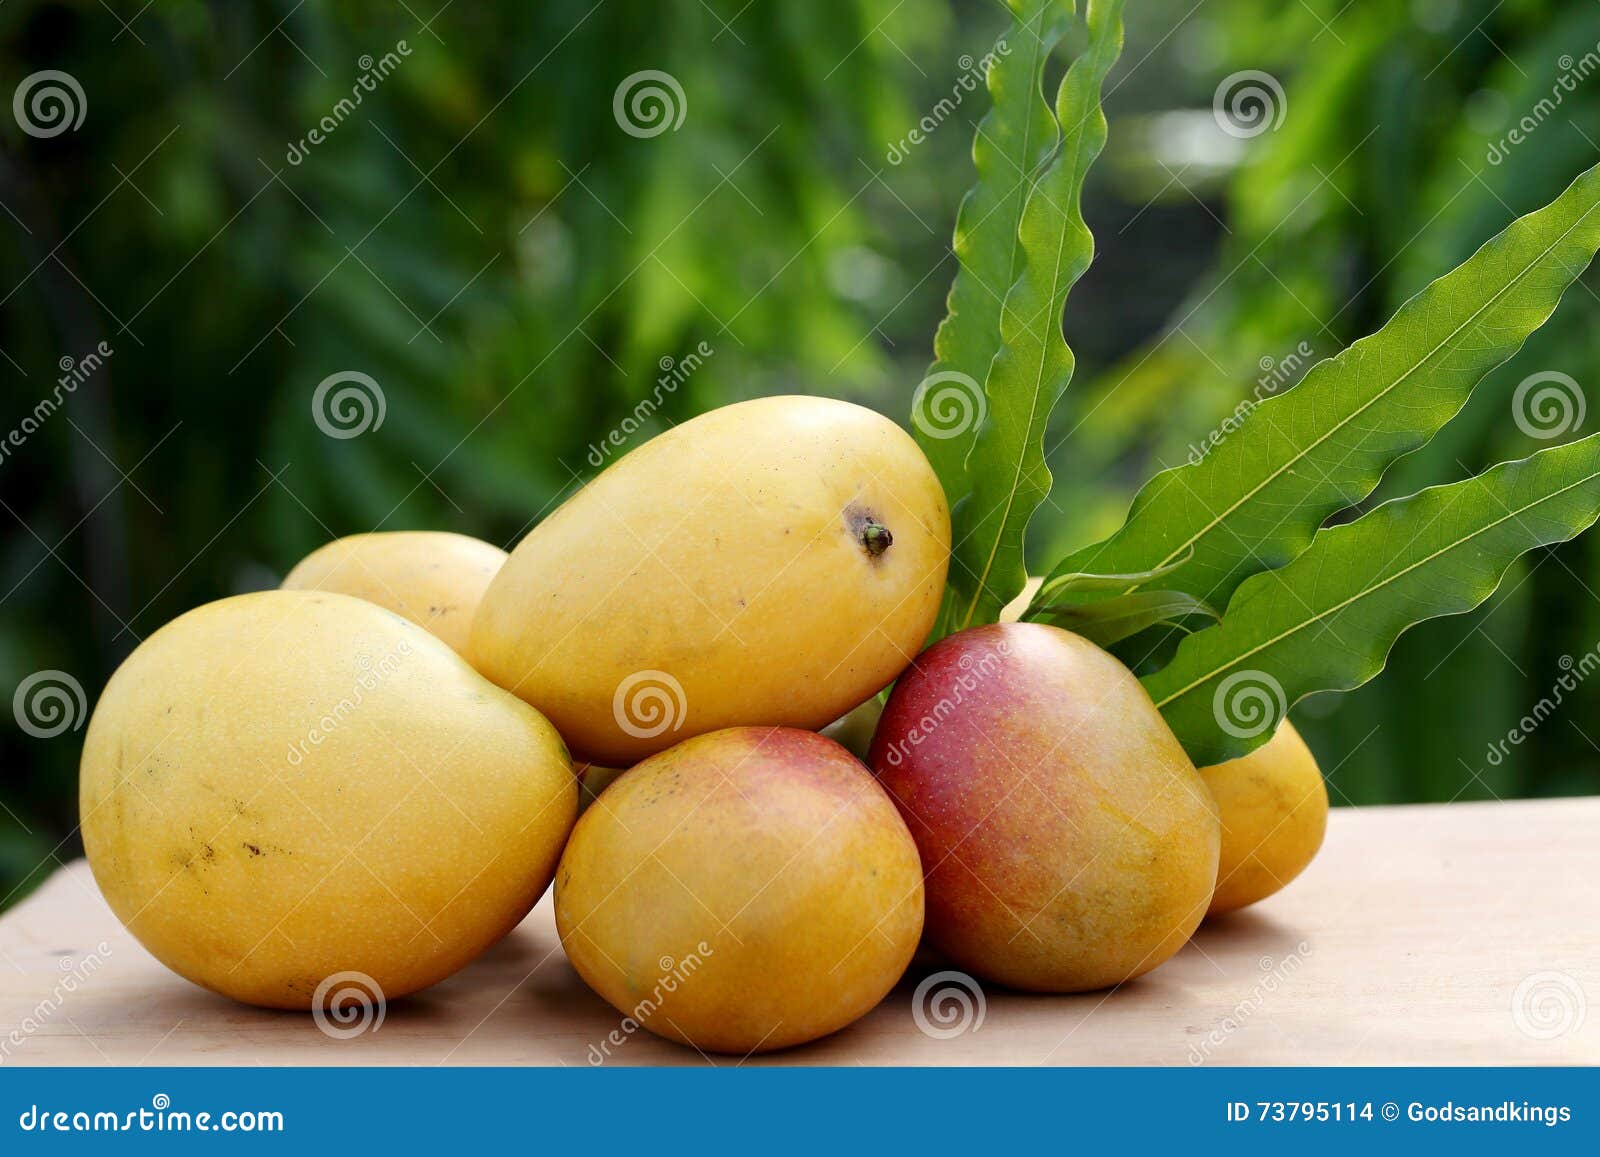 Yellow Mango Images - Free Download on Freepik